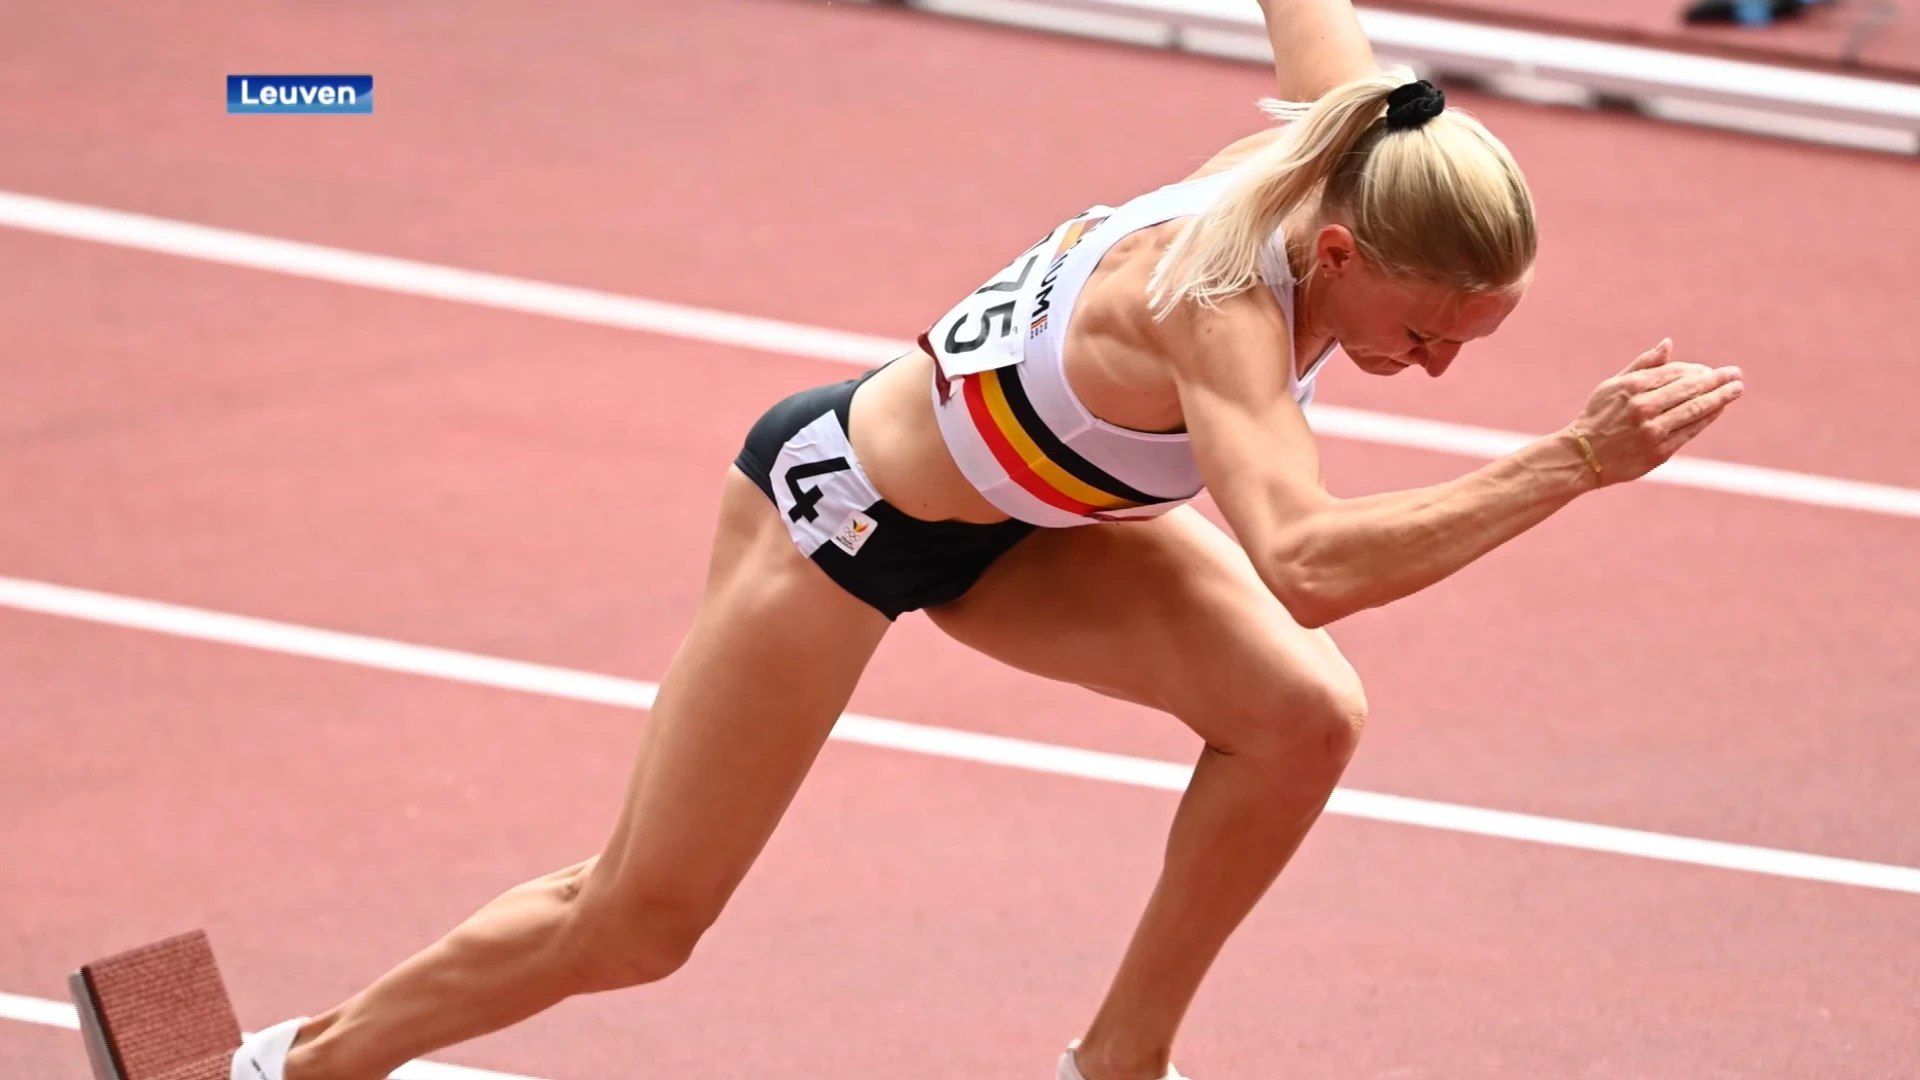 Olympische hoop uit Leuven geraakt niet voorbij kwalificaties